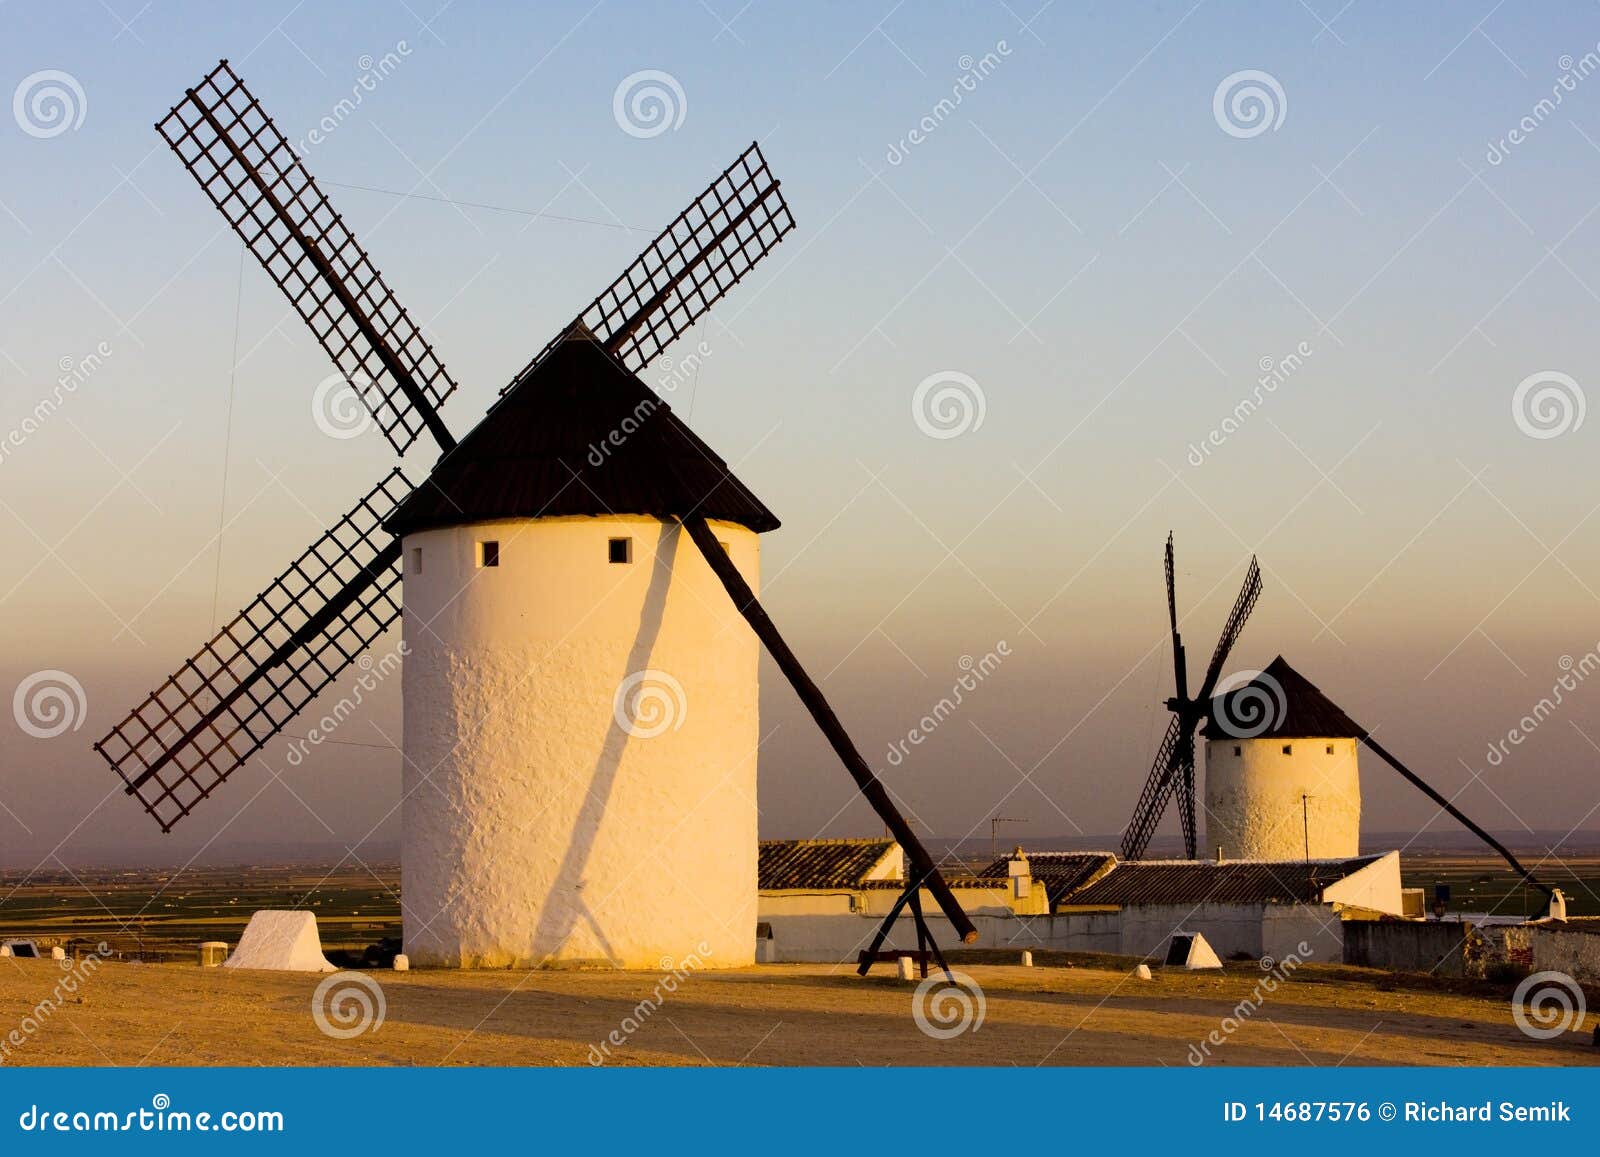 windmills in campo de criptana